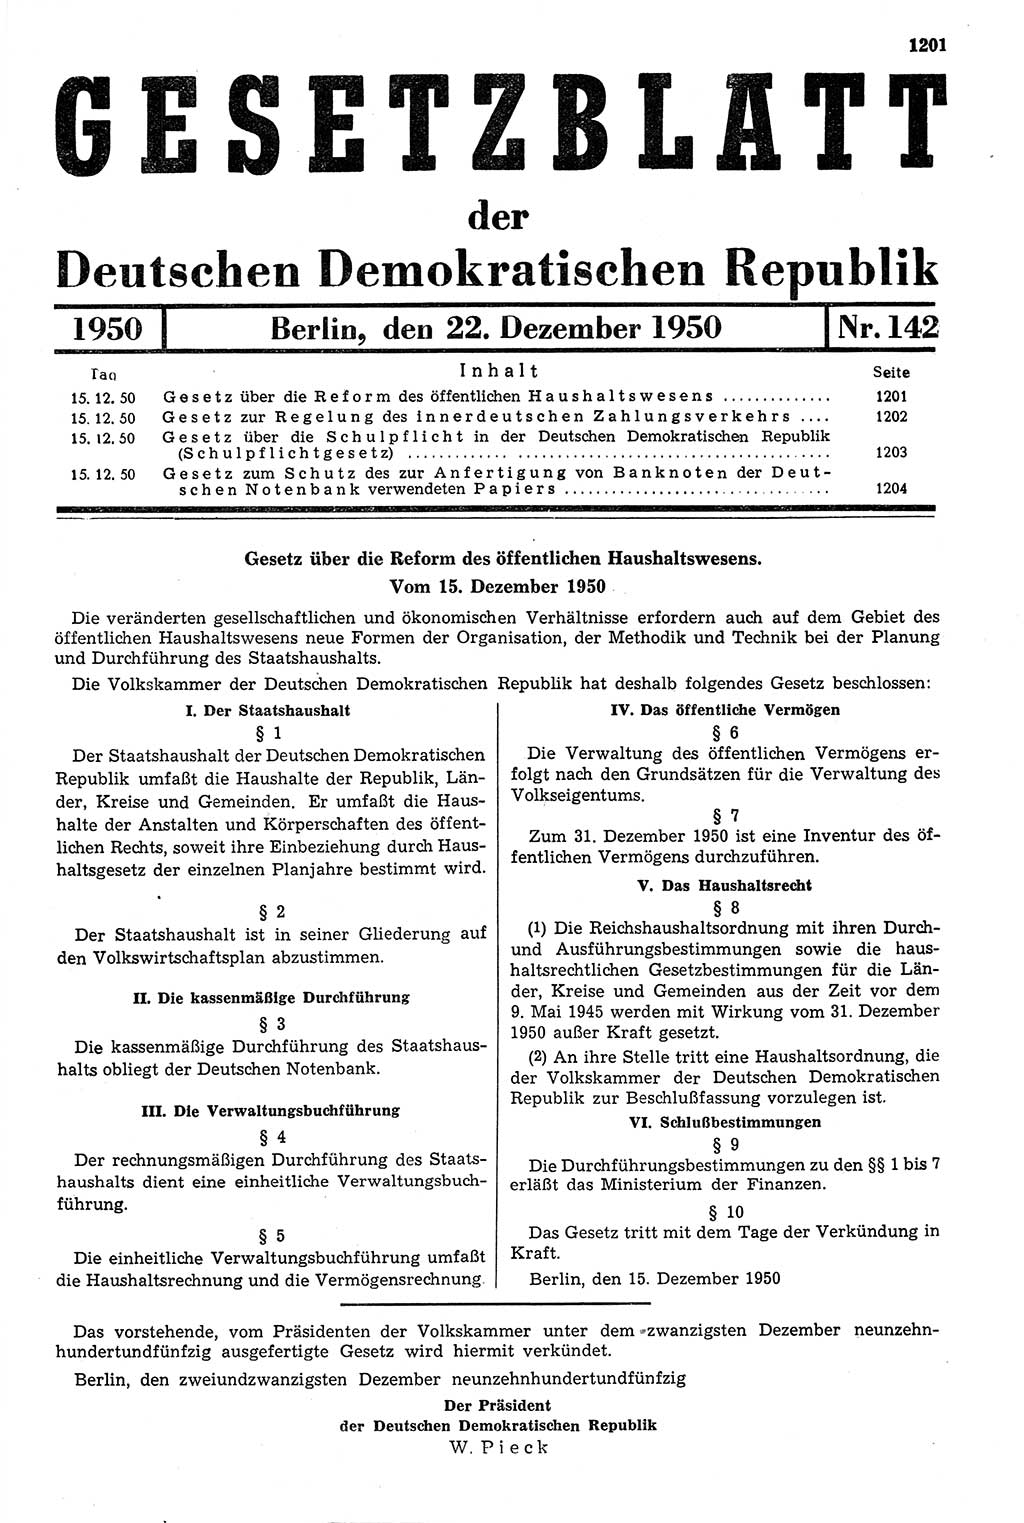 Gesetzblatt (GBl.) der Deutschen Demokratischen Republik (DDR) 1950, Seite 1201 (GBl. DDR 1950, S. 1201)